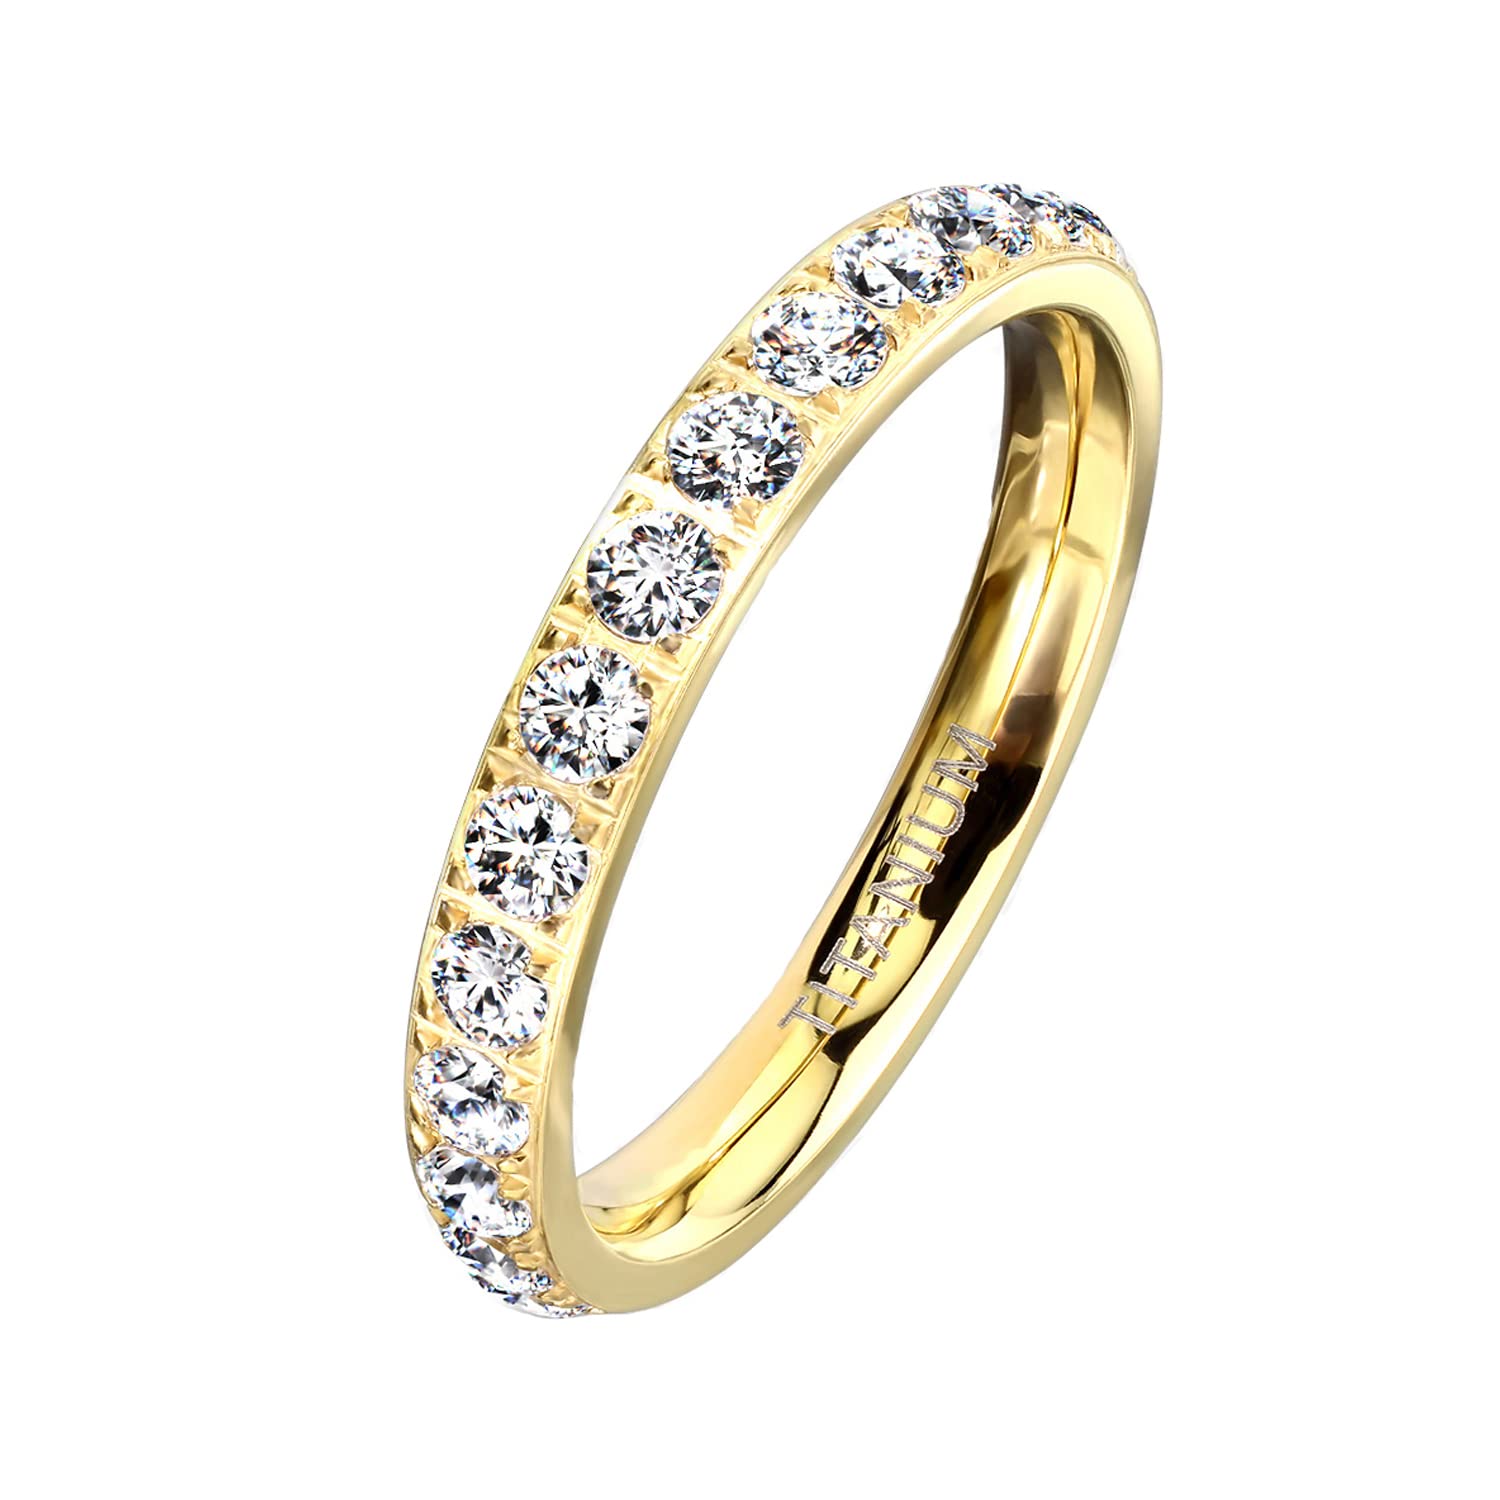 Mianova Damen Ring Titan mit vielen Glitzer Kristallen Steinen Damenring Memory Band Bandring Ewigkeitsring Trauring Verlobungsring Fingerring Gold Größe 50 (15.9)